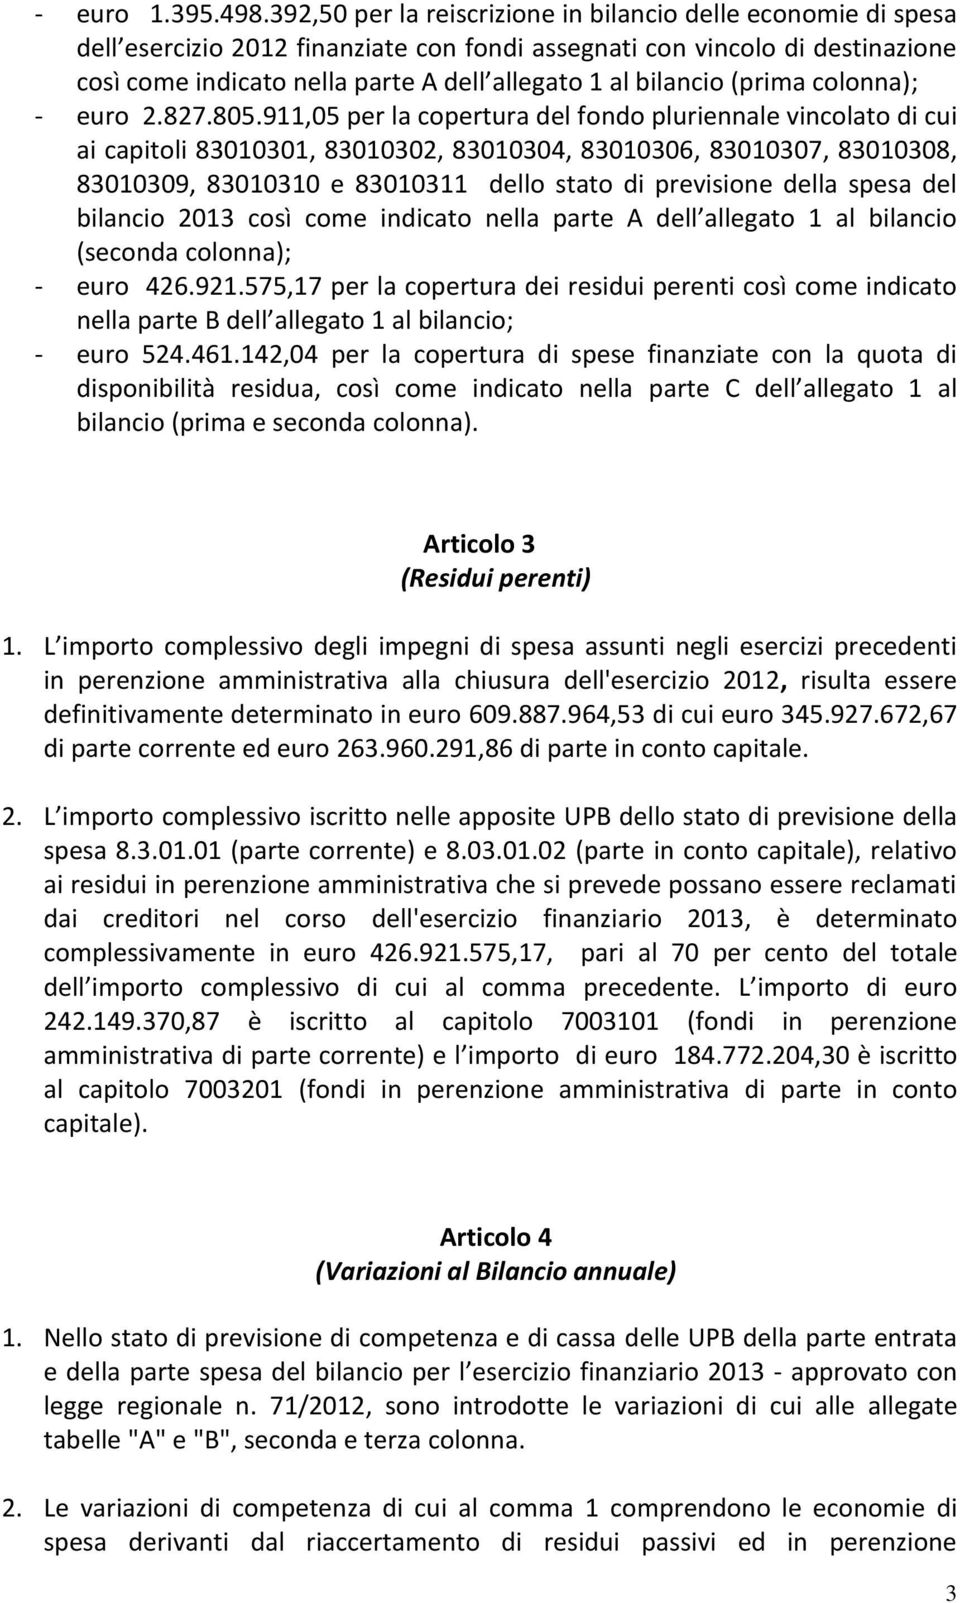 bilancio (prima colonna); - euro 2.827.805.